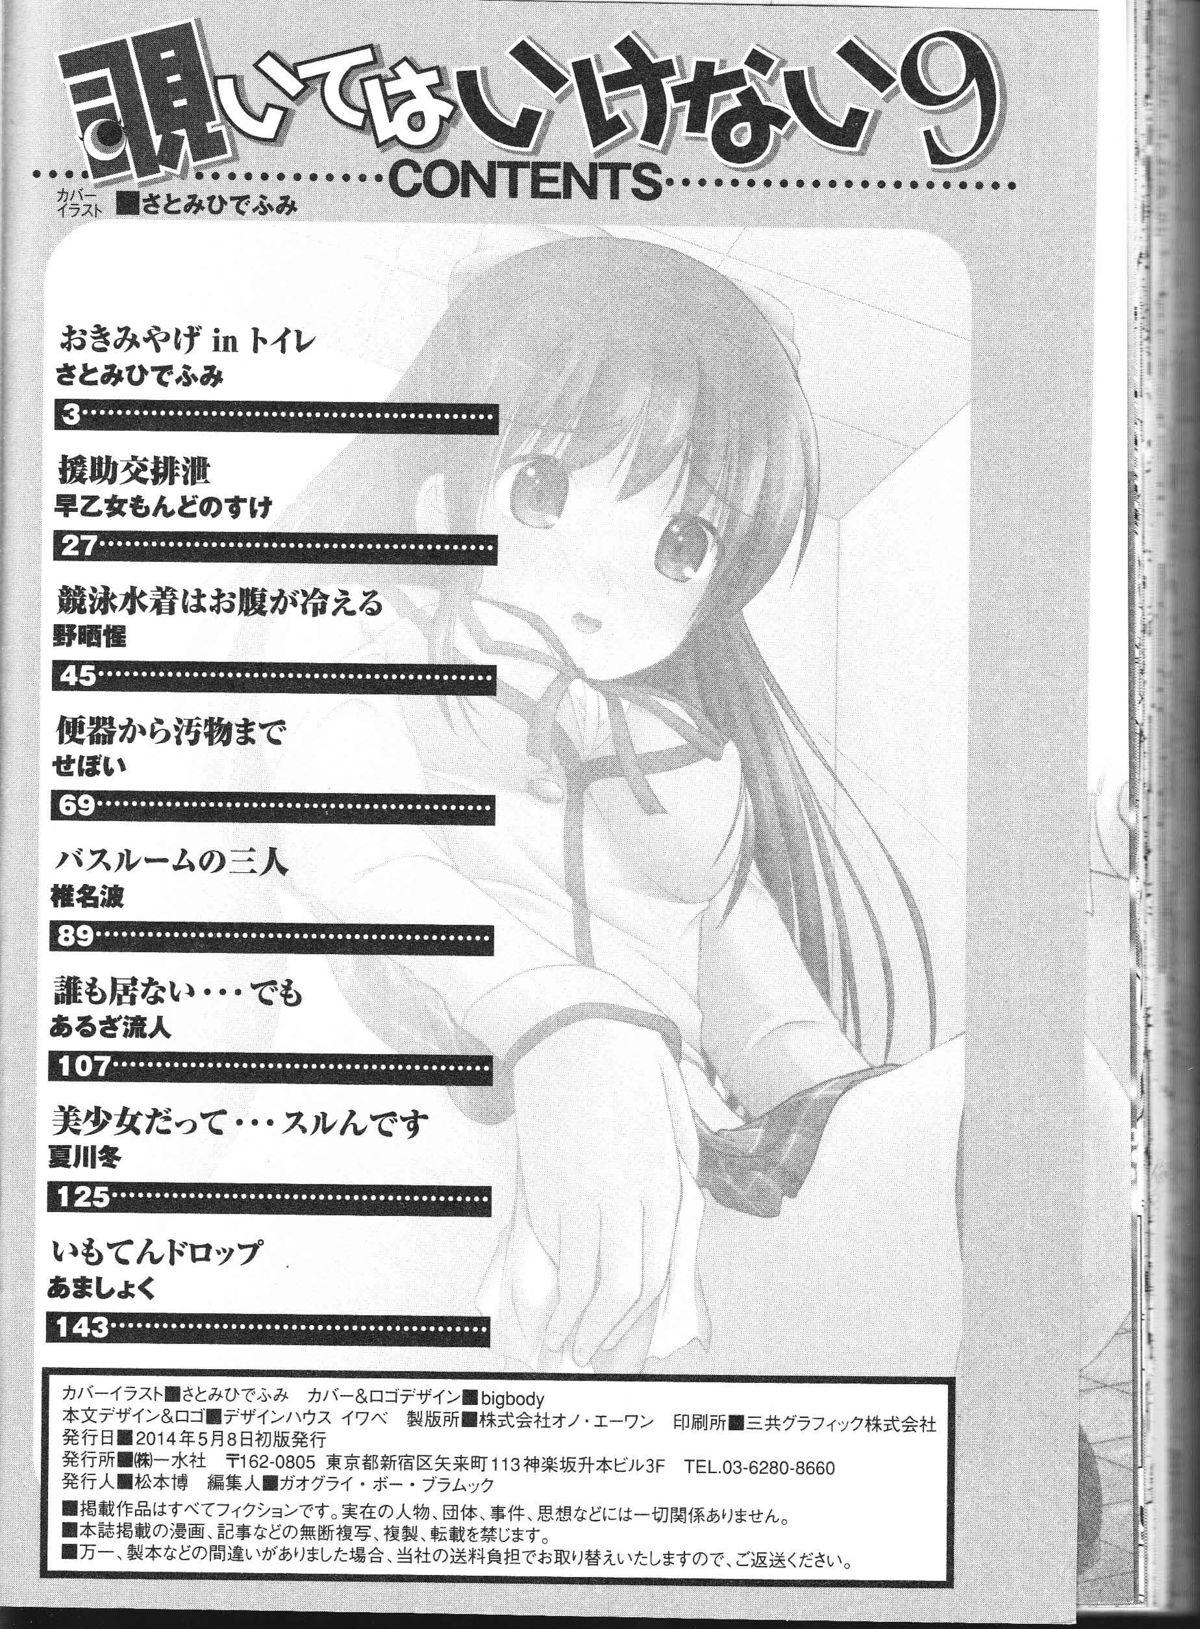 Gilf Nozoite wa Ikenai 9 - Do Not Peep! 9 Lady - Page 163